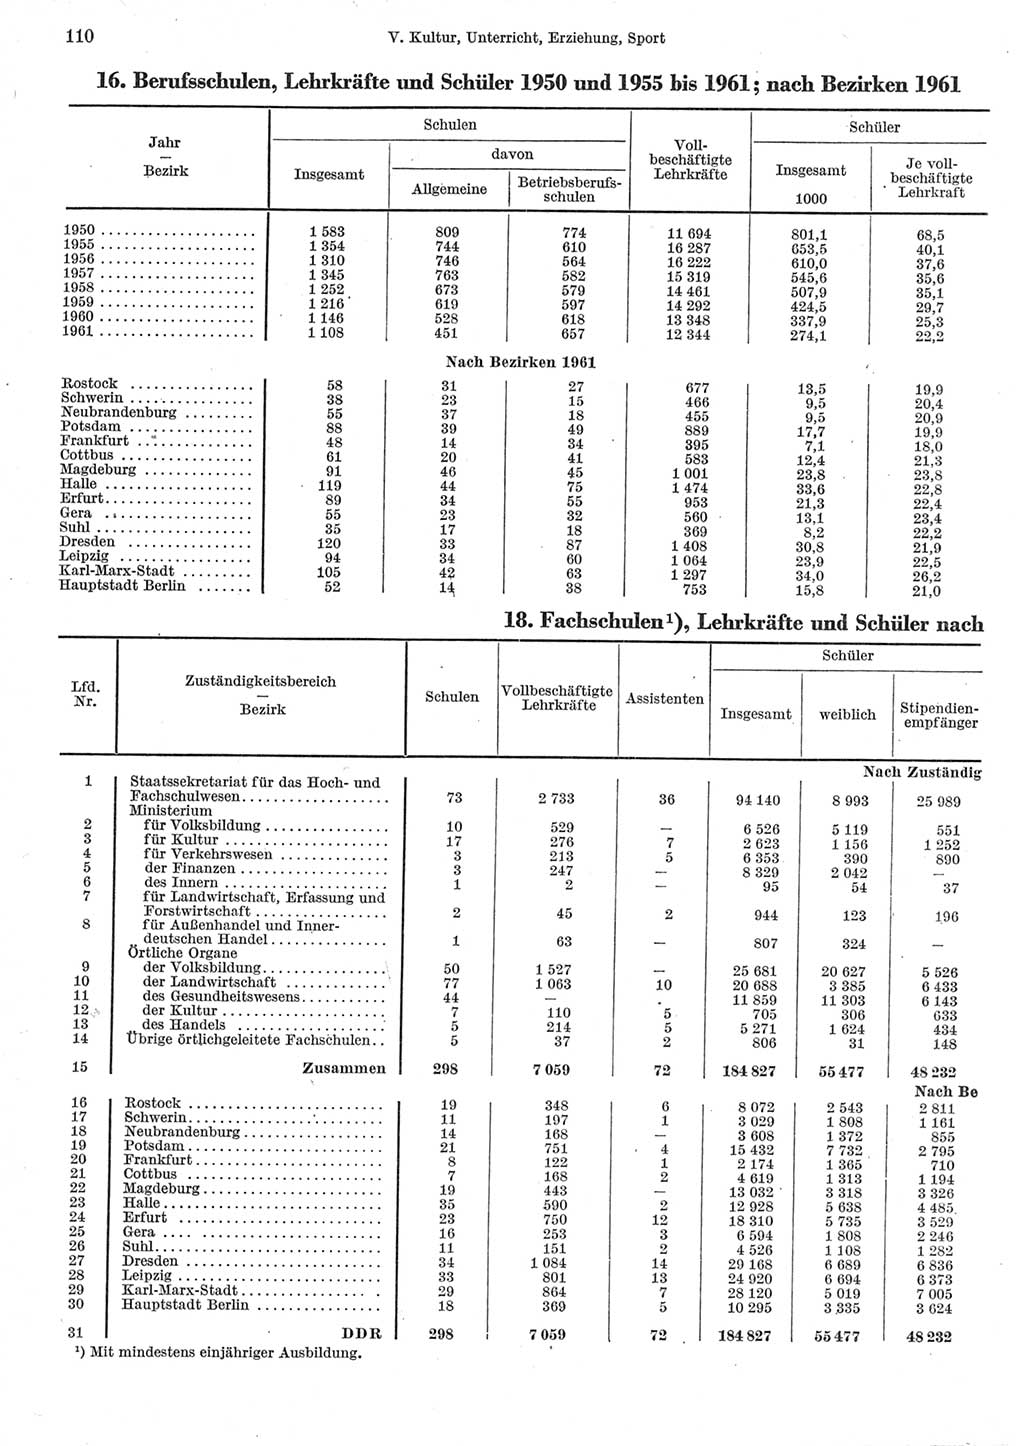 Statistisches Jahrbuch der Deutschen Demokratischen Republik (DDR) 1962, Seite 110 (Stat. Jb. DDR 1962, S. 110)